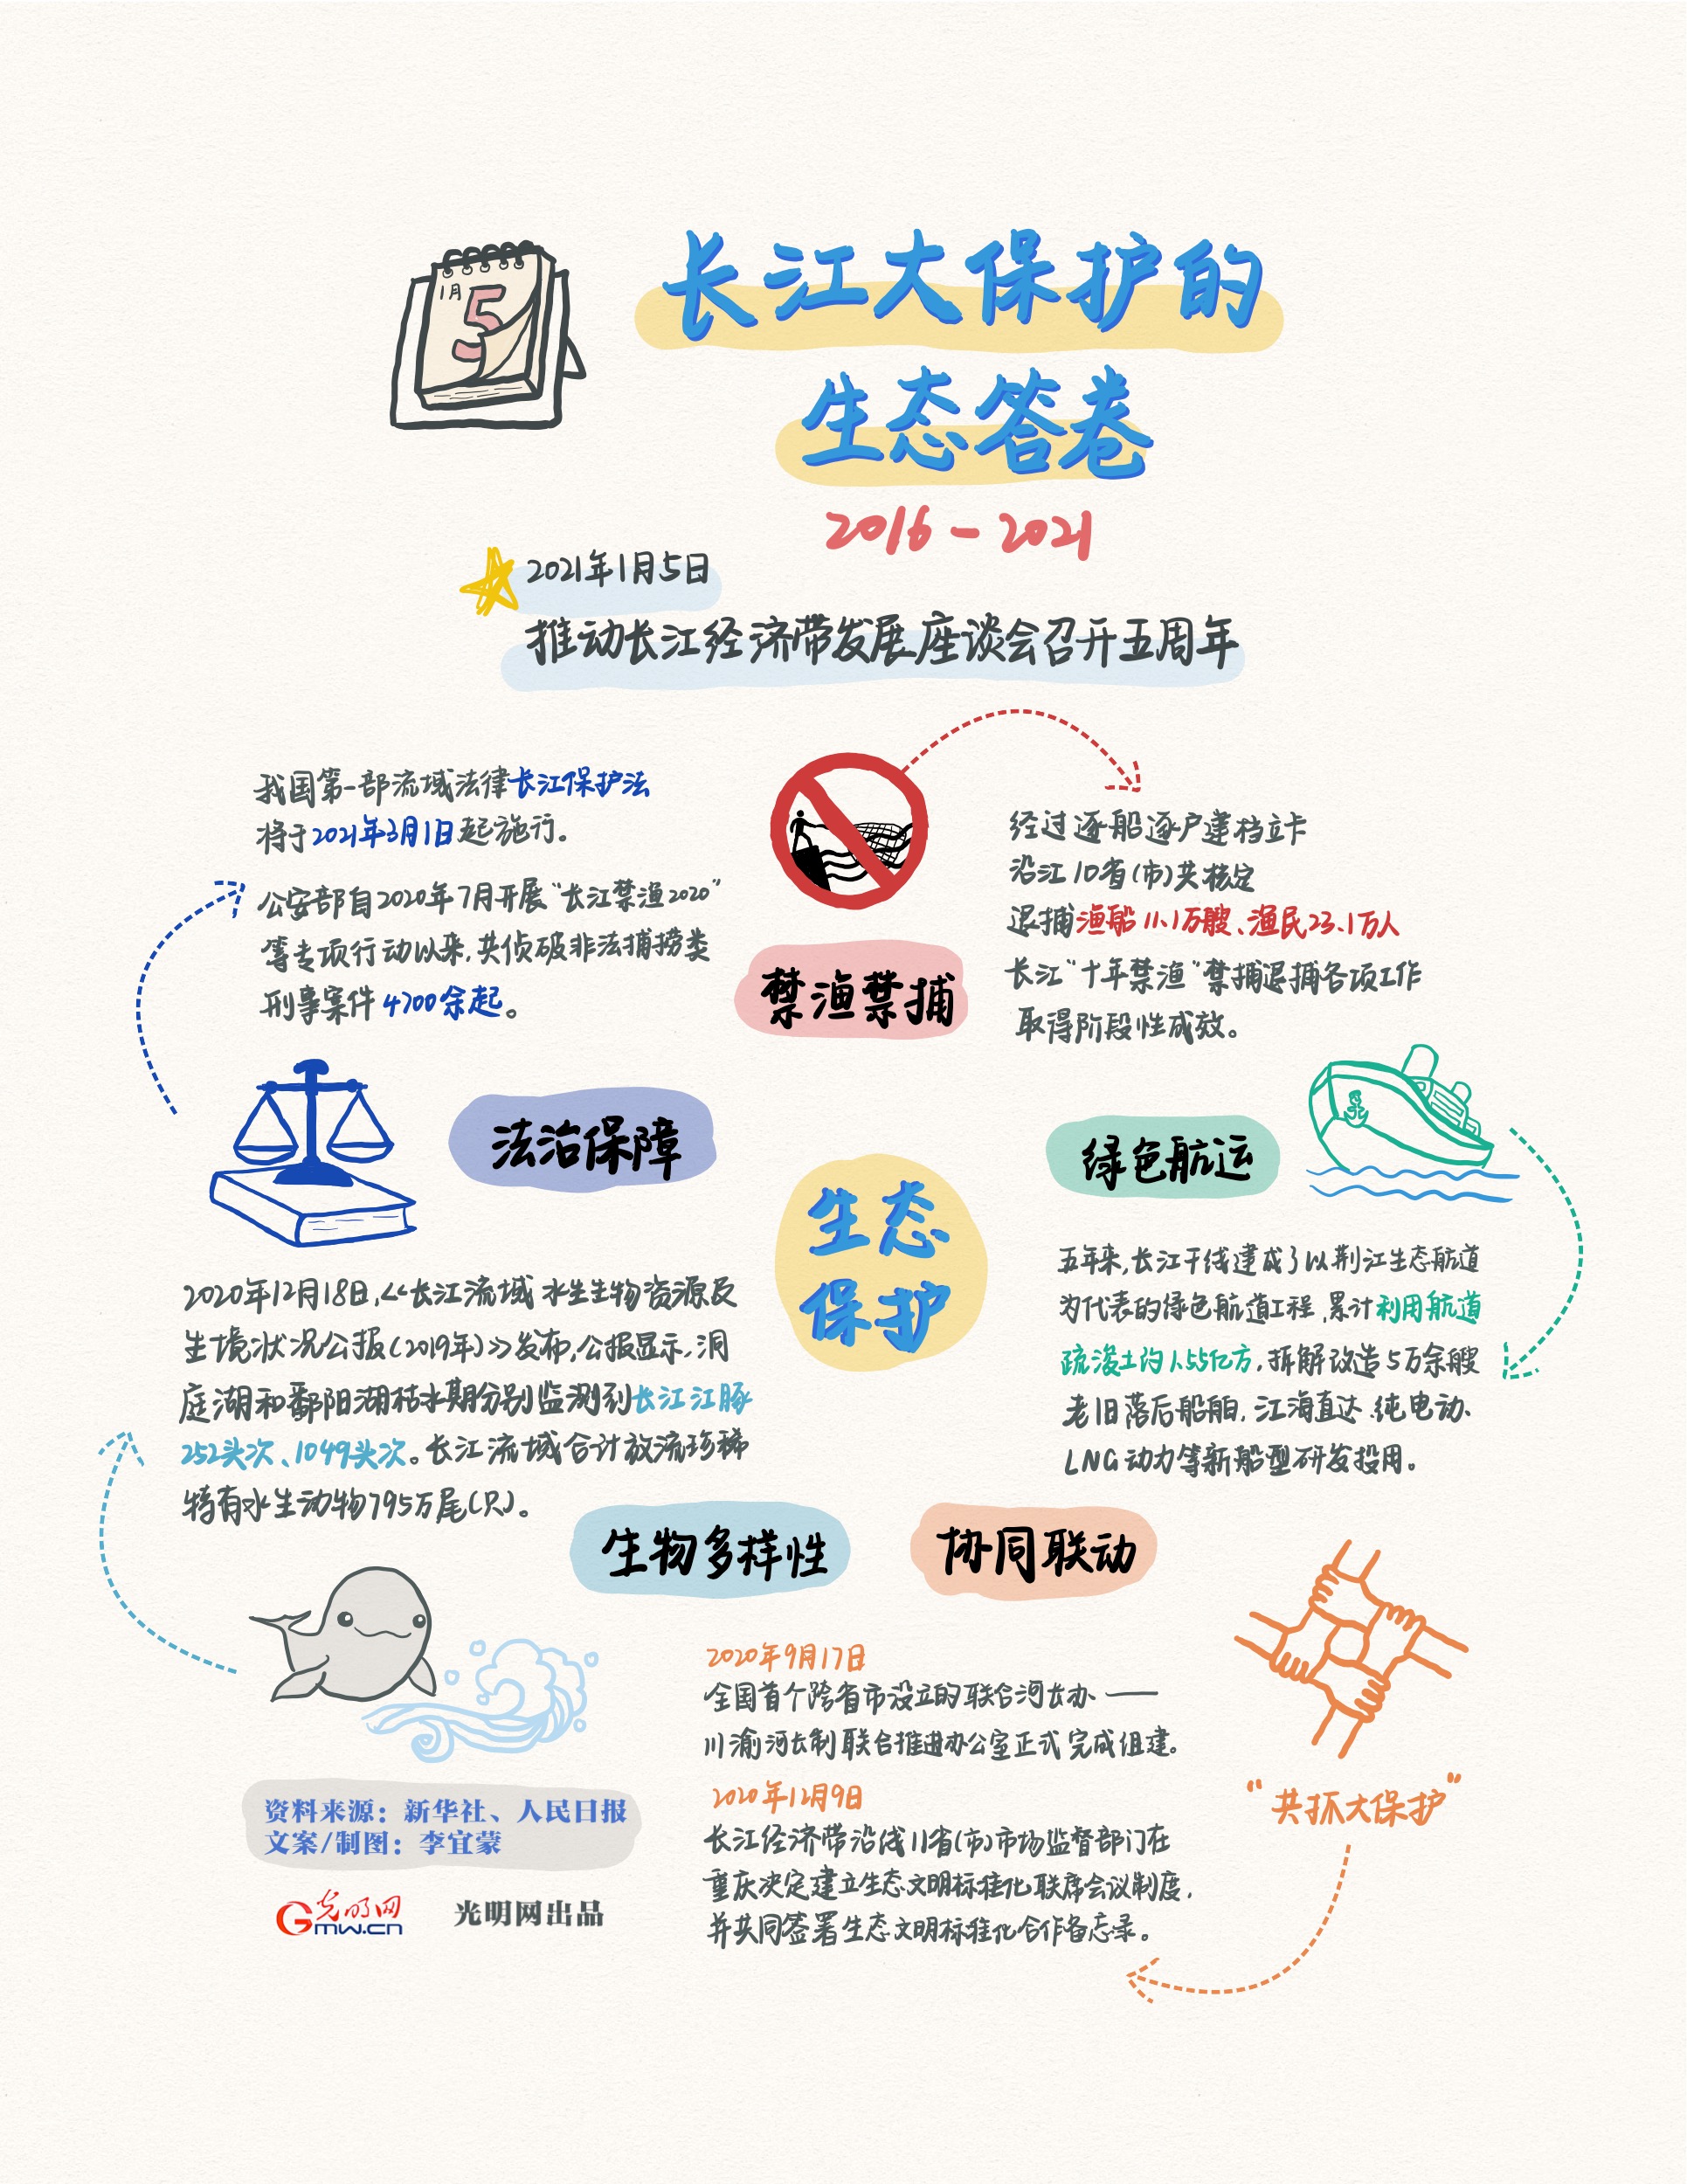 【手绘图解】长江大保护的生态答卷